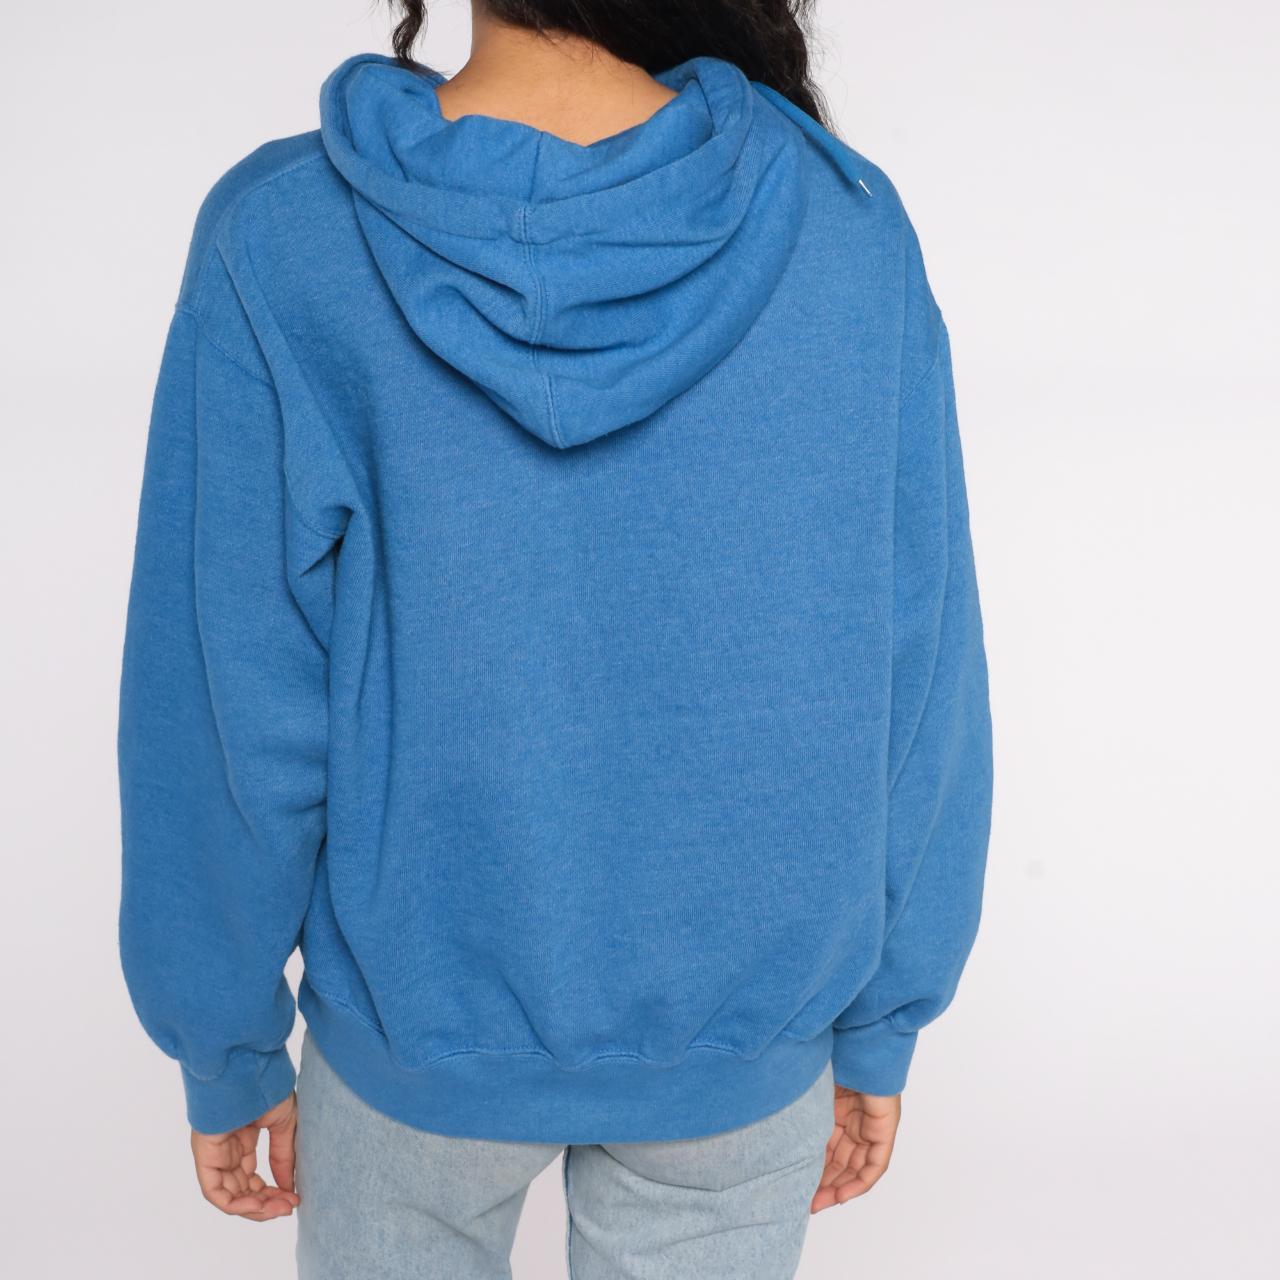 Modern Rocky Mountain hoodie sweatshirt in blue with... - Depop